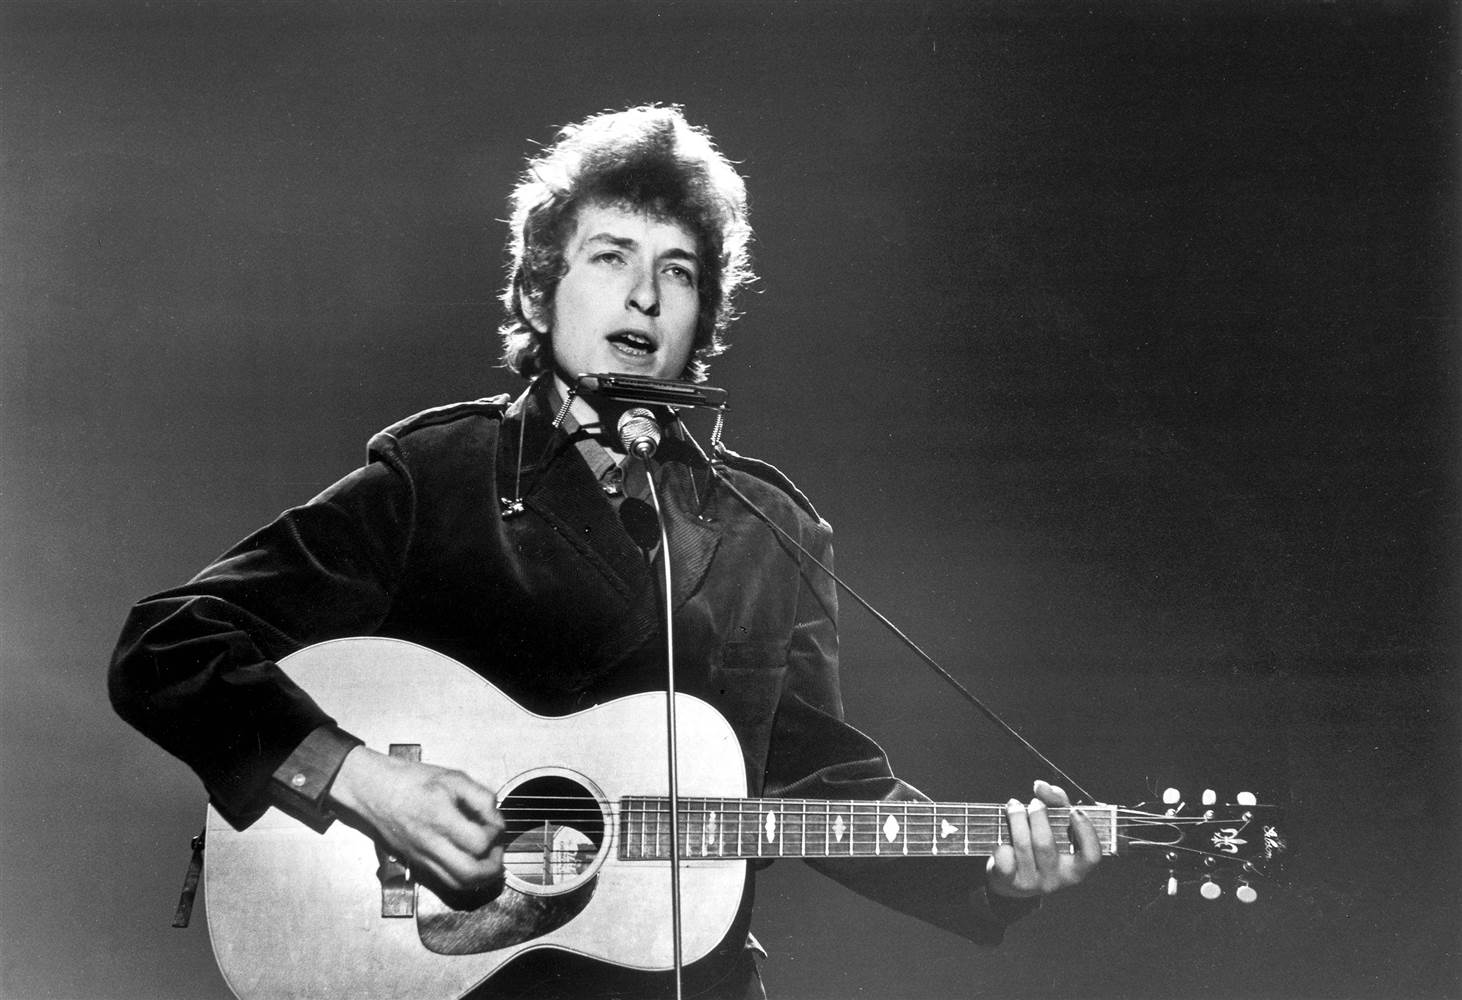 Bob Dylan: Esős nap asszonyai 12:35 (Rainy Day Women 12:35)